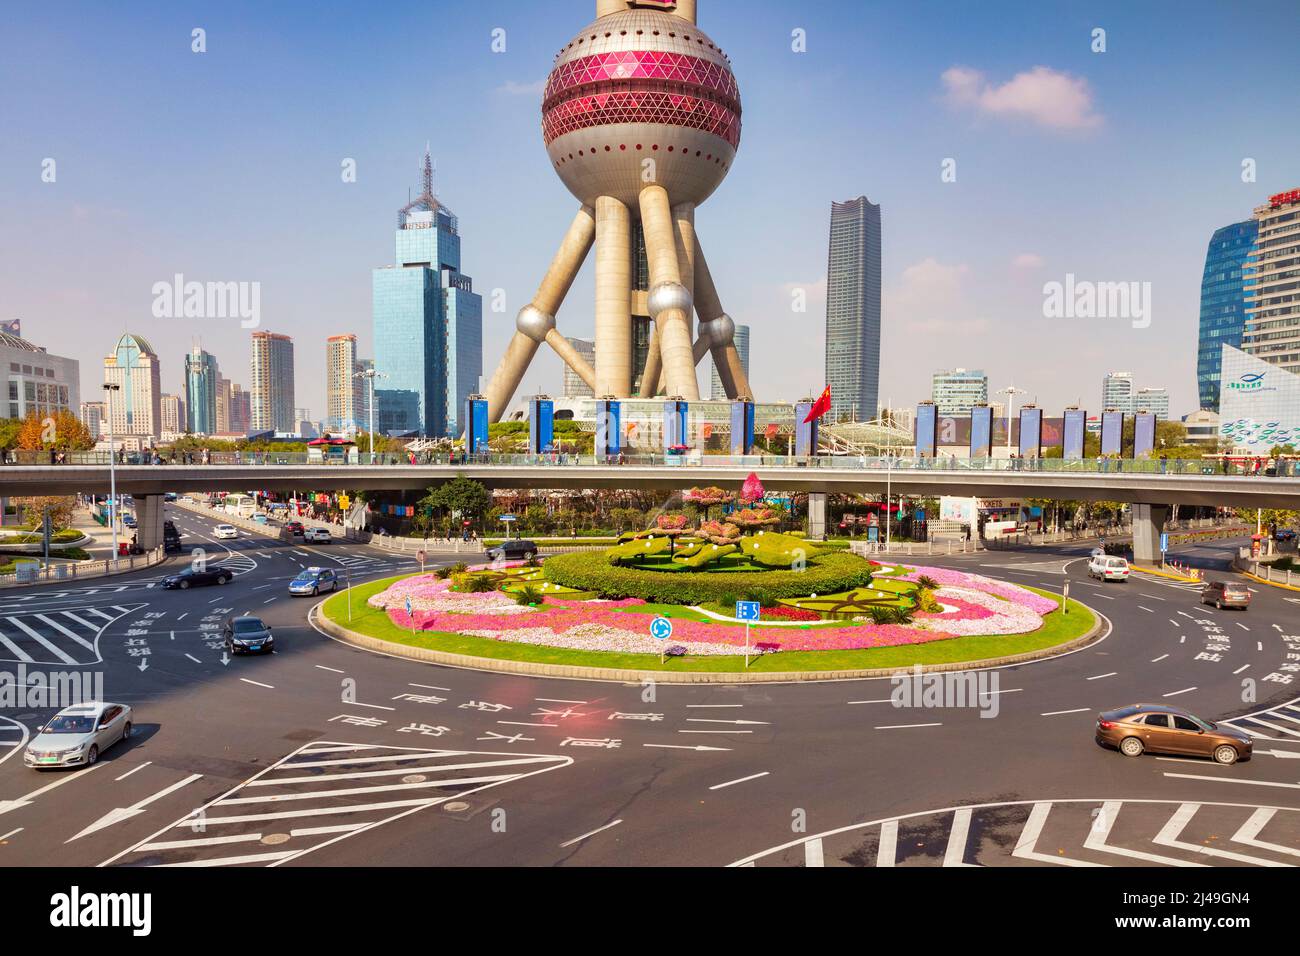 1 de diciembre de 2018: Shanghai, China - Una vista del distrito de Pudong, con la Torre de la Perla Oriental, y una gran rotonda con topiary en el medio. Foto de stock